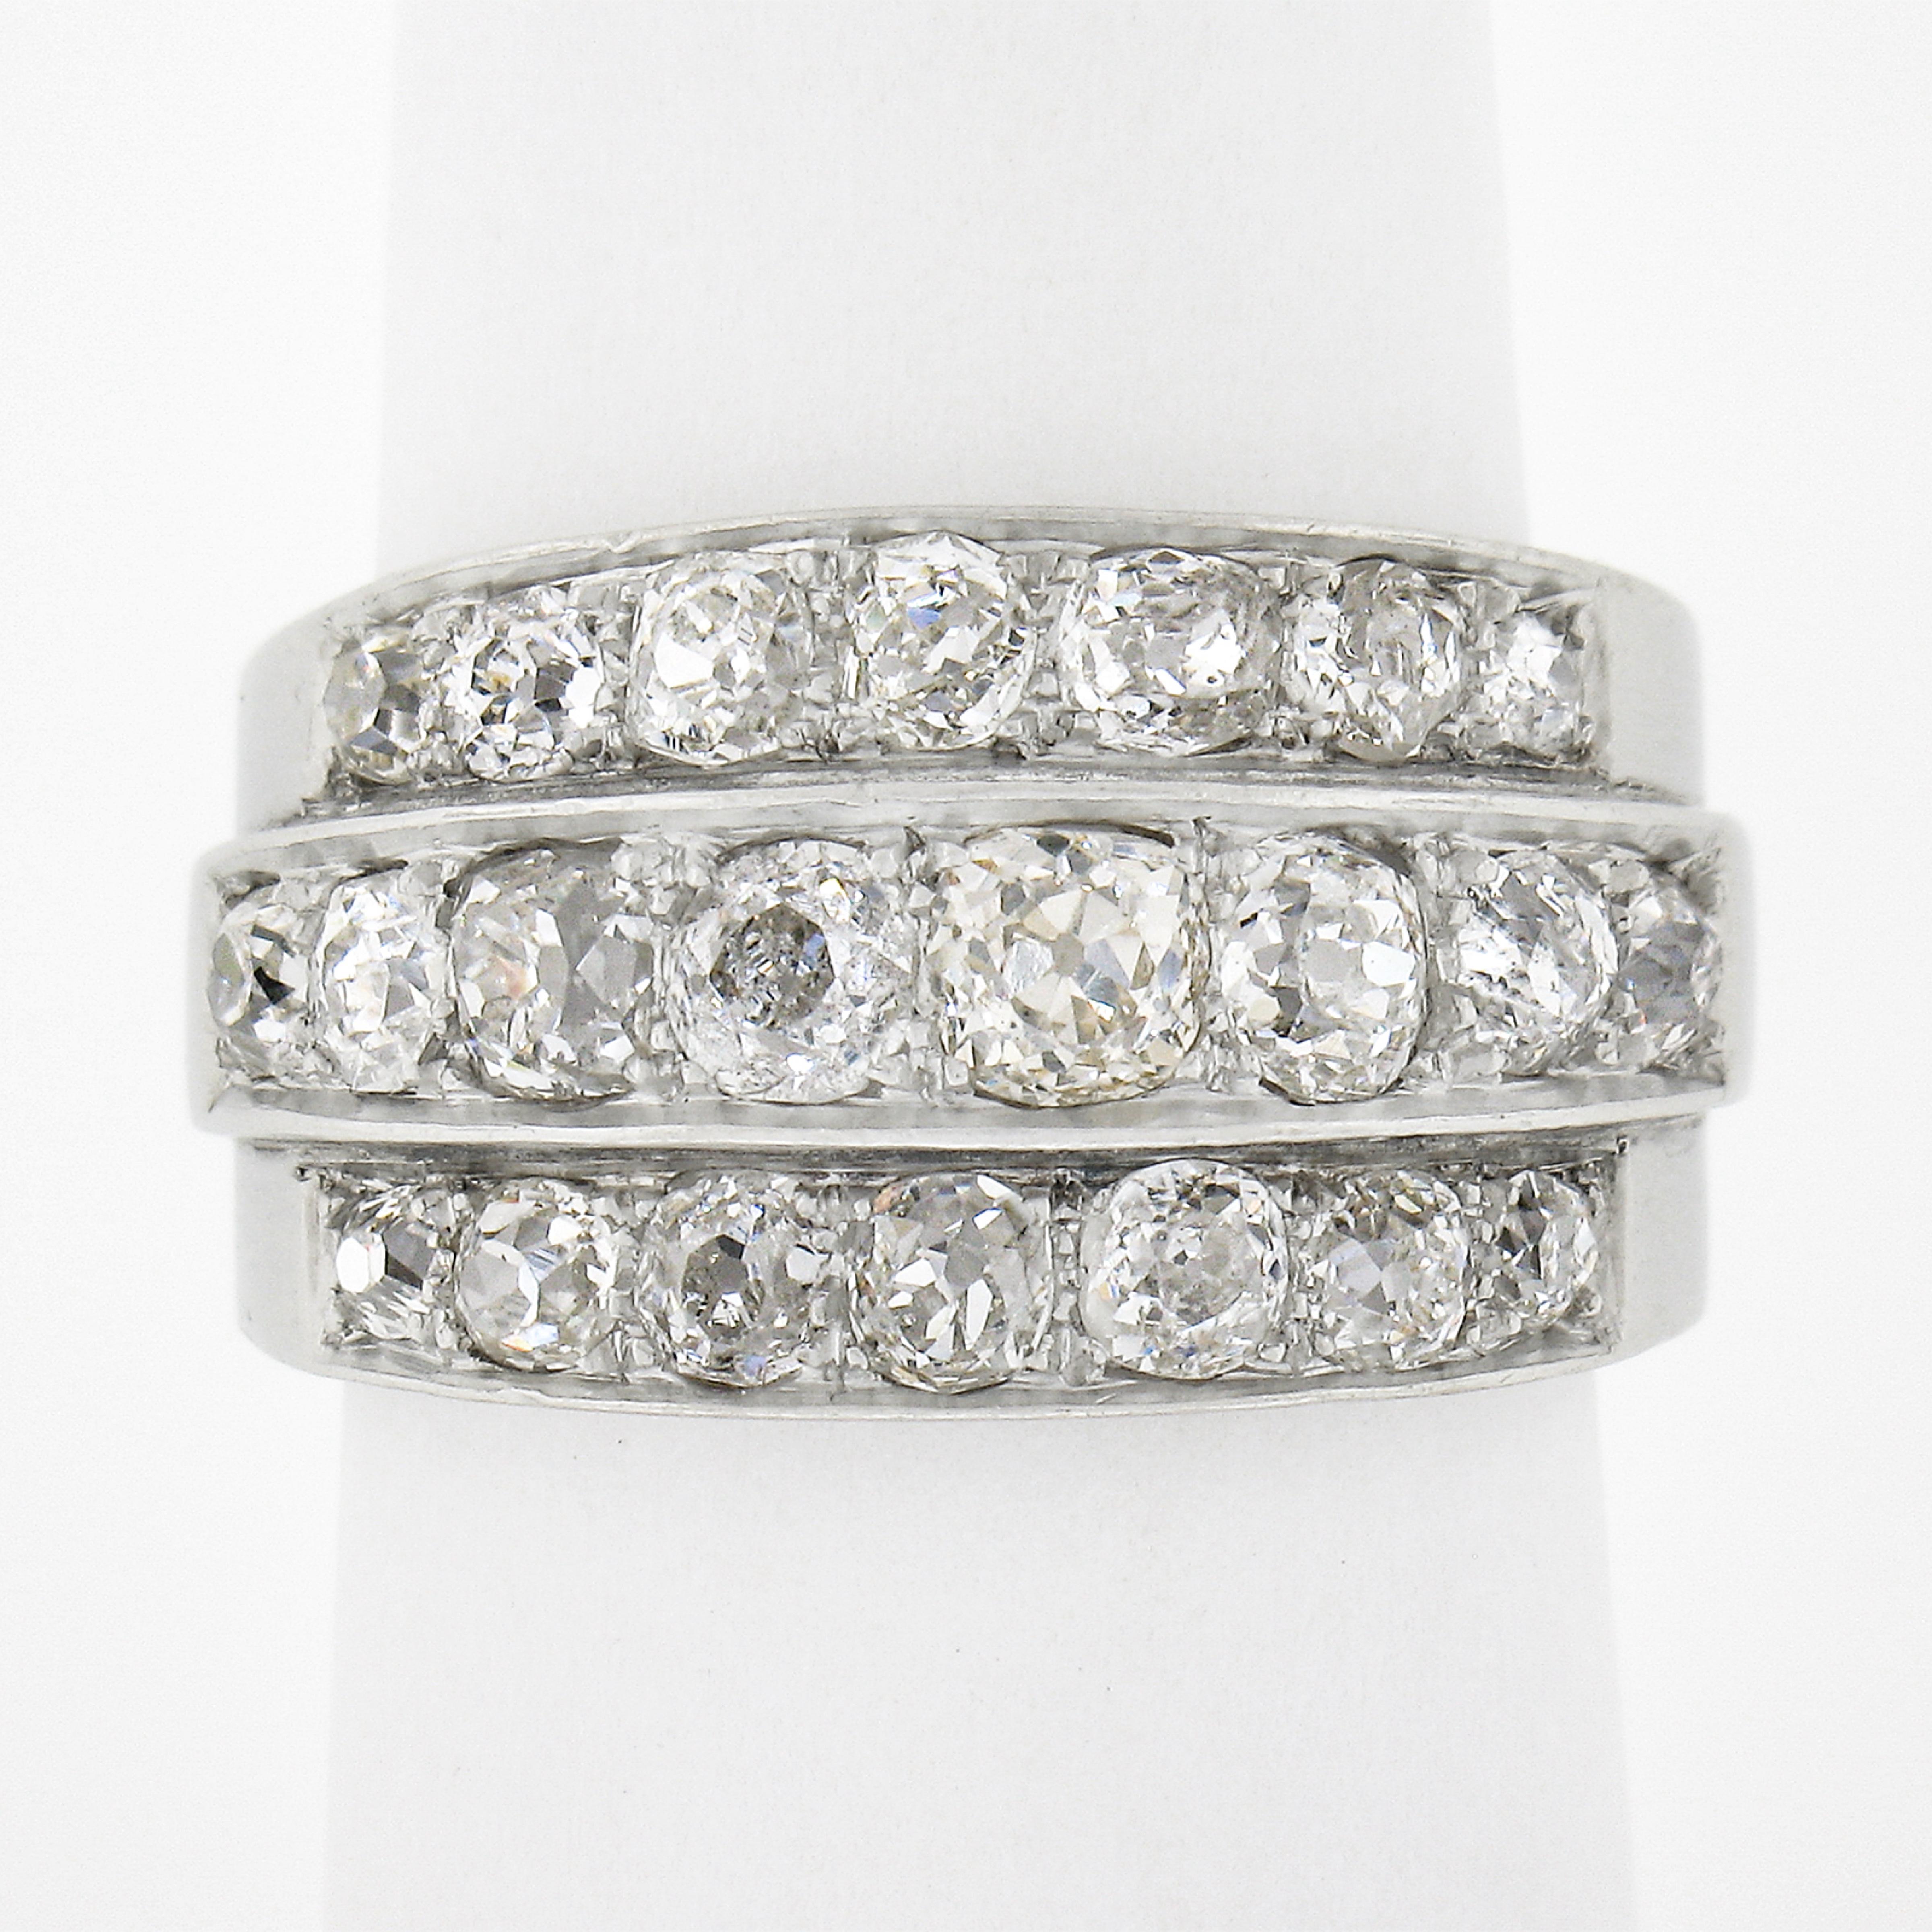 Diese begehrenswerte breite antike Edwardian Band / Ring verfügt über 3 Reihen von Herz erwärmt klobig alten Mine geschnitten Diamanten. Jeder Diamant hat sein eigenes Leben, denn jeder funkelt einzigartig mit seinem eigenen Facettenmuster. Der Ring